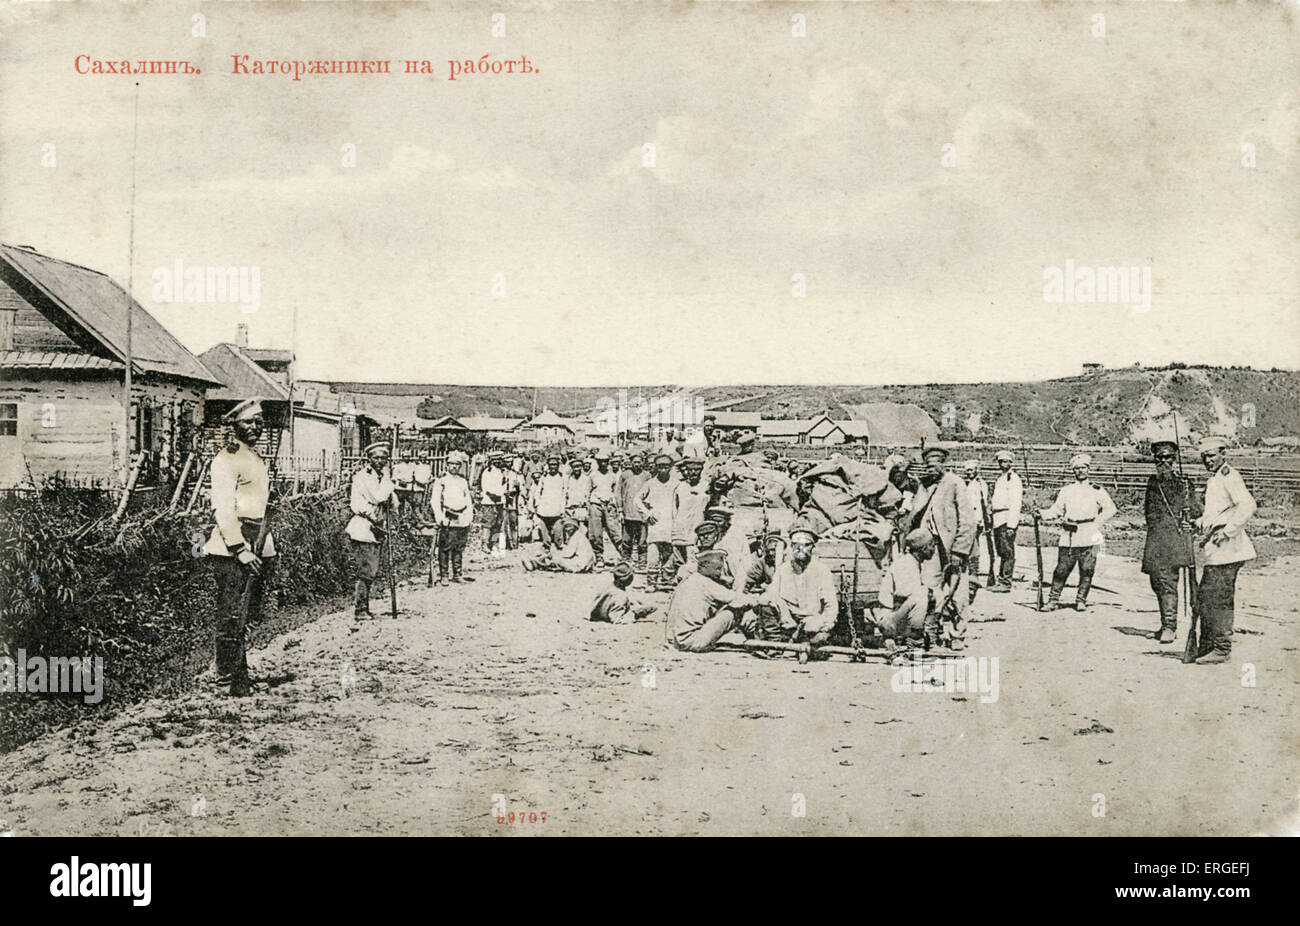 Russische Kriegsgefangene auf Sachalin, um 1900. Große Insel im Nordpazifik. Auch bekannt als Kuye, nördlich von Japan. Stockfoto